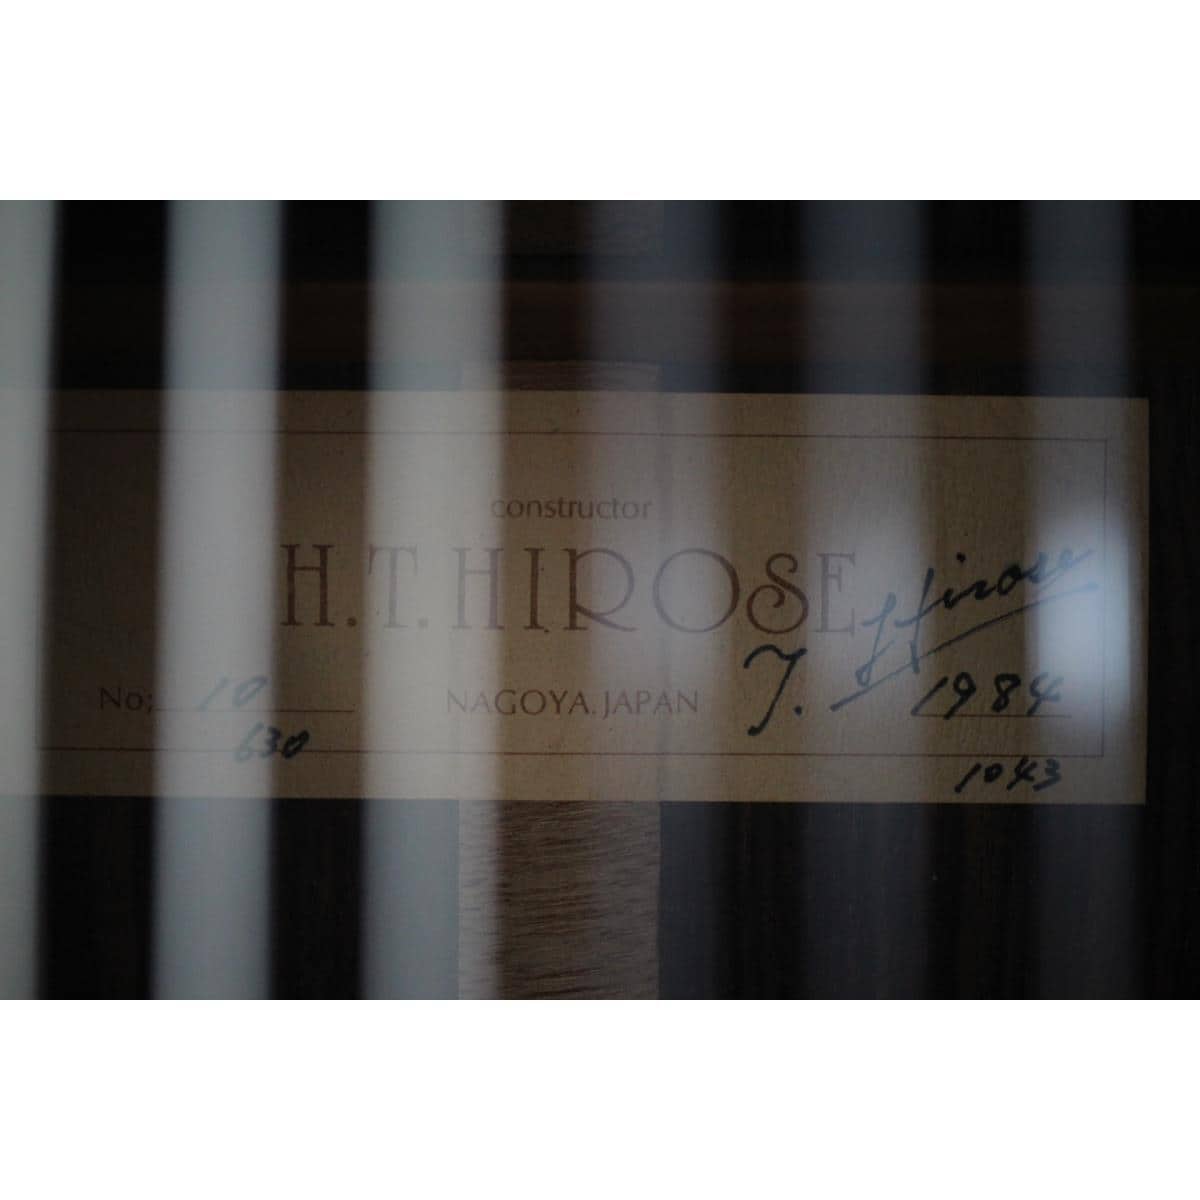 H. T. HIROSE NO. 10